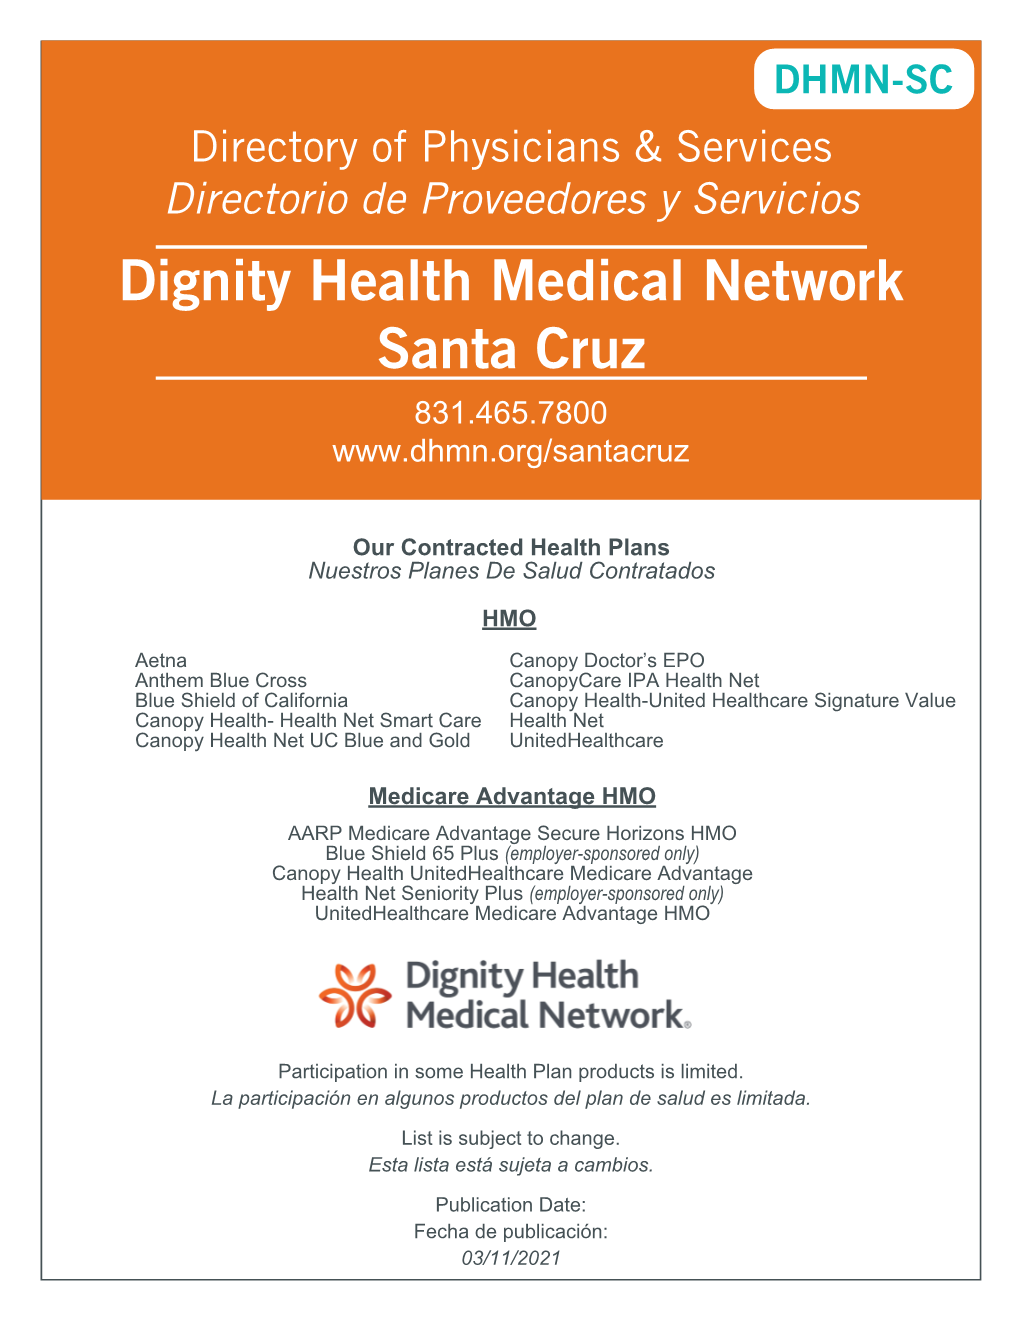 DHMN-SC Directory of Physicians & Services Directorio De Proveedores Y Servicios Dignity Health Medical Network Santa Cruz 831.465.7800